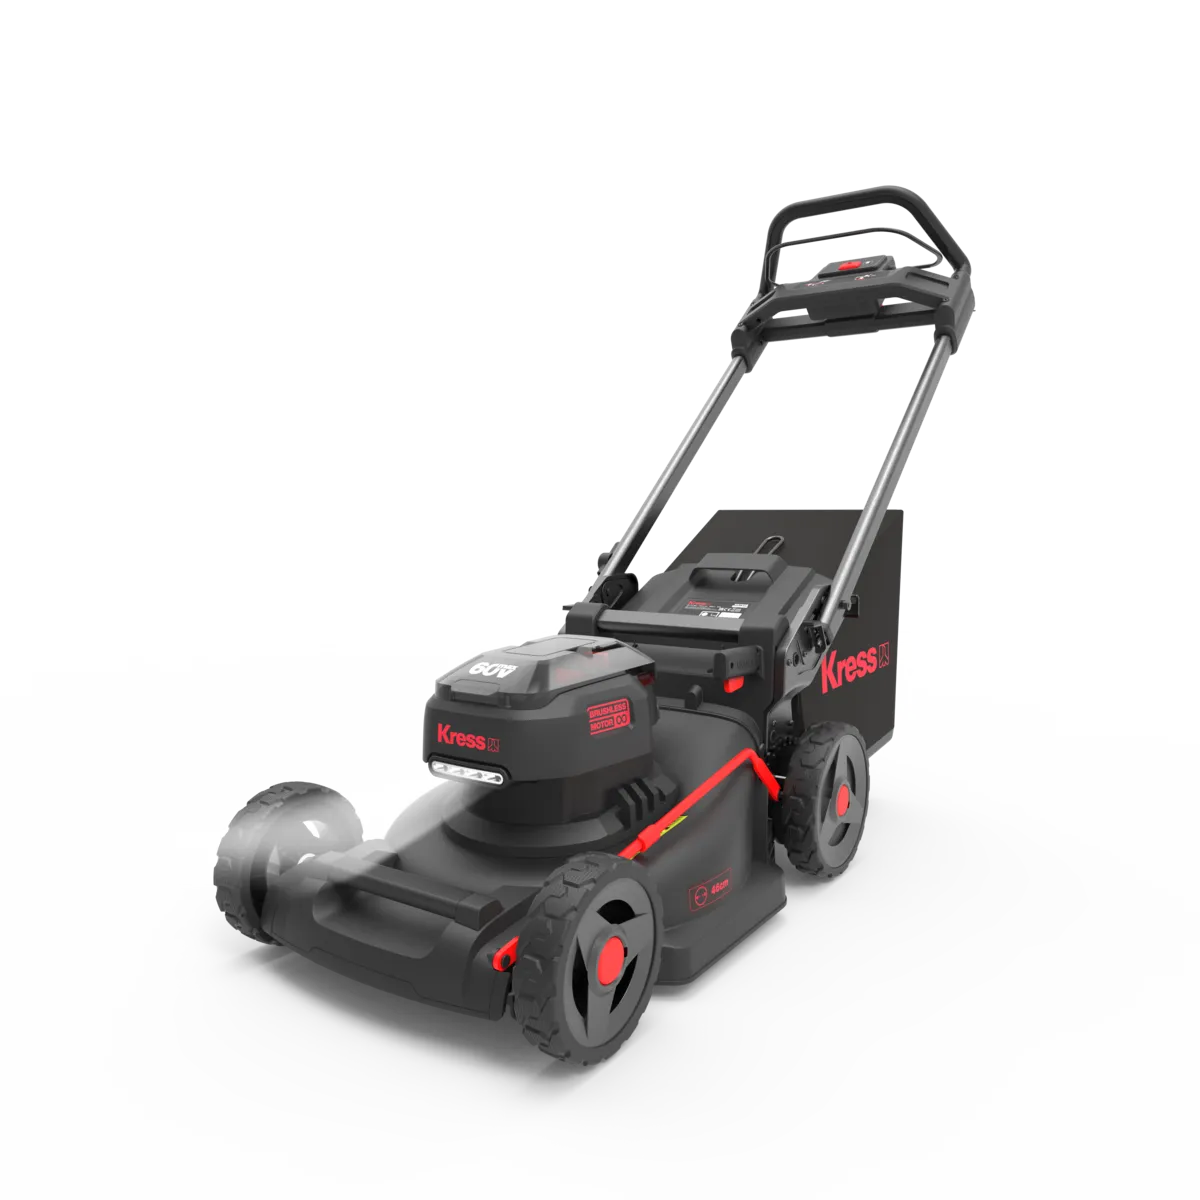 Kress 60V/46cm Cordless Push Lawn Mower Kit (incl battery & charger - KG756E)